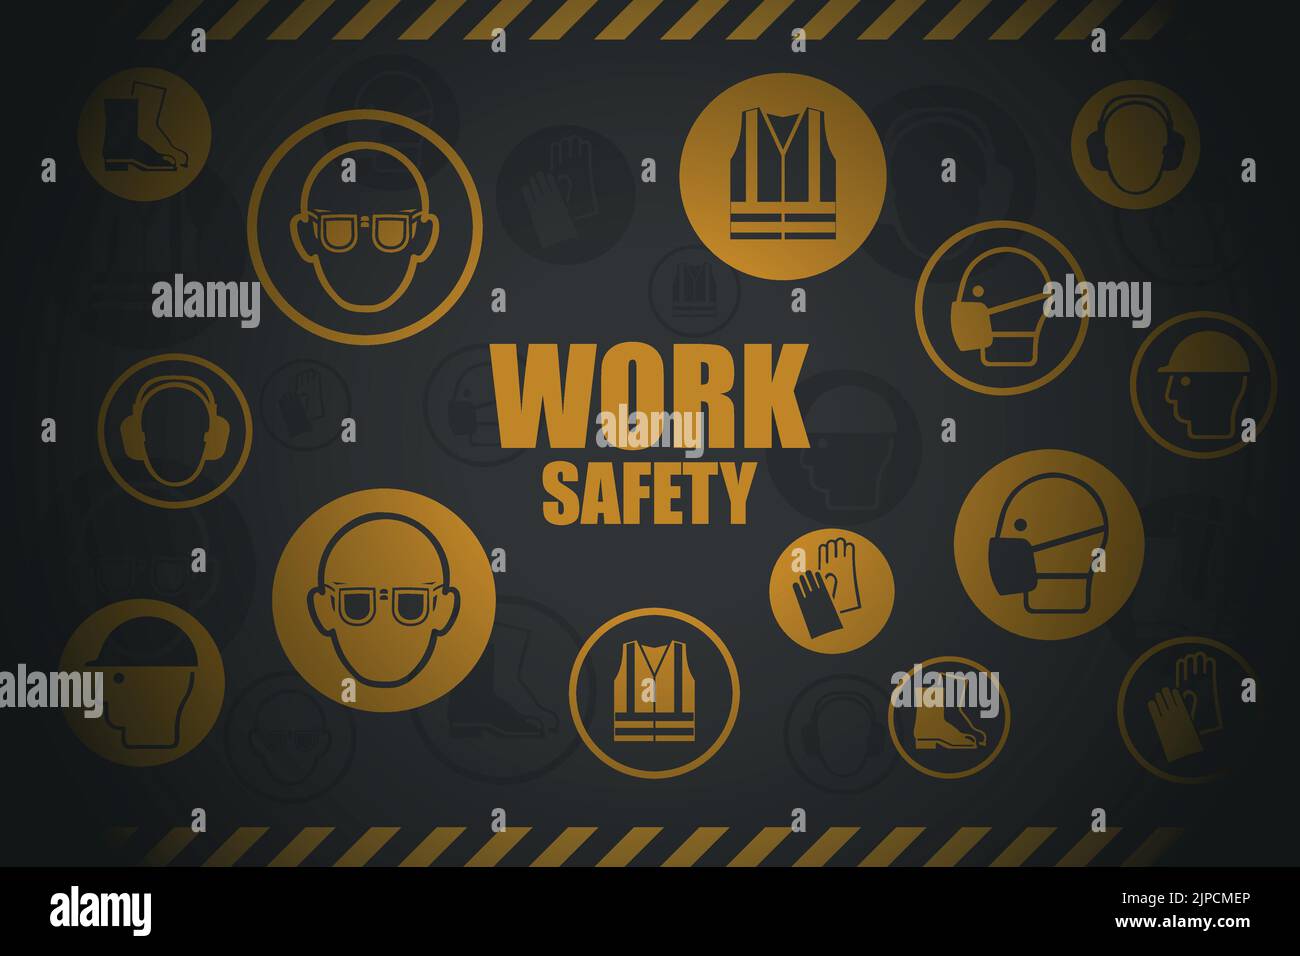 Hintergrund von Symbolen, Piktogrammen zu Arbeitssicherheit und Arbeitsschutz. Persönliche Schutzausrüstung zur Prävention von beruflichen Risiken a Stock Vektor